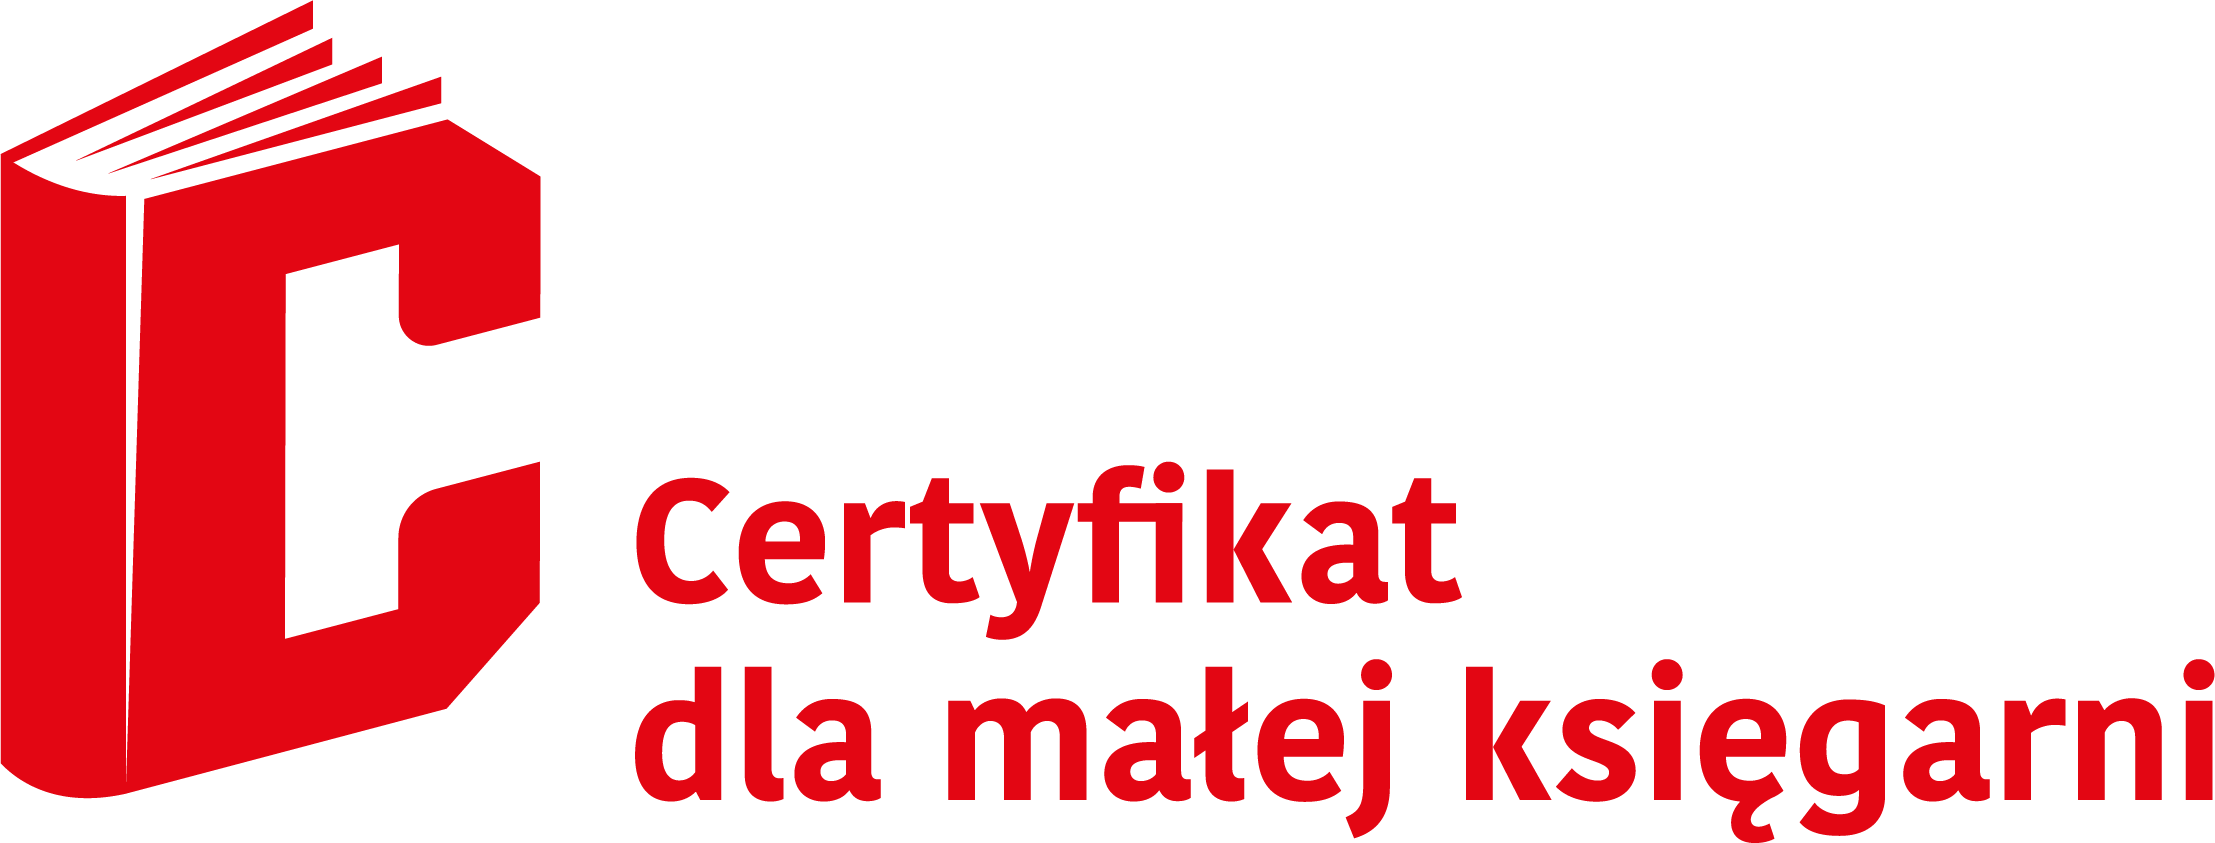 Księgarnia FiKa jest beneficjentką programu własnego Instytutu Książki „Certyfikat dla małych księgarń” na lata 2022–2023